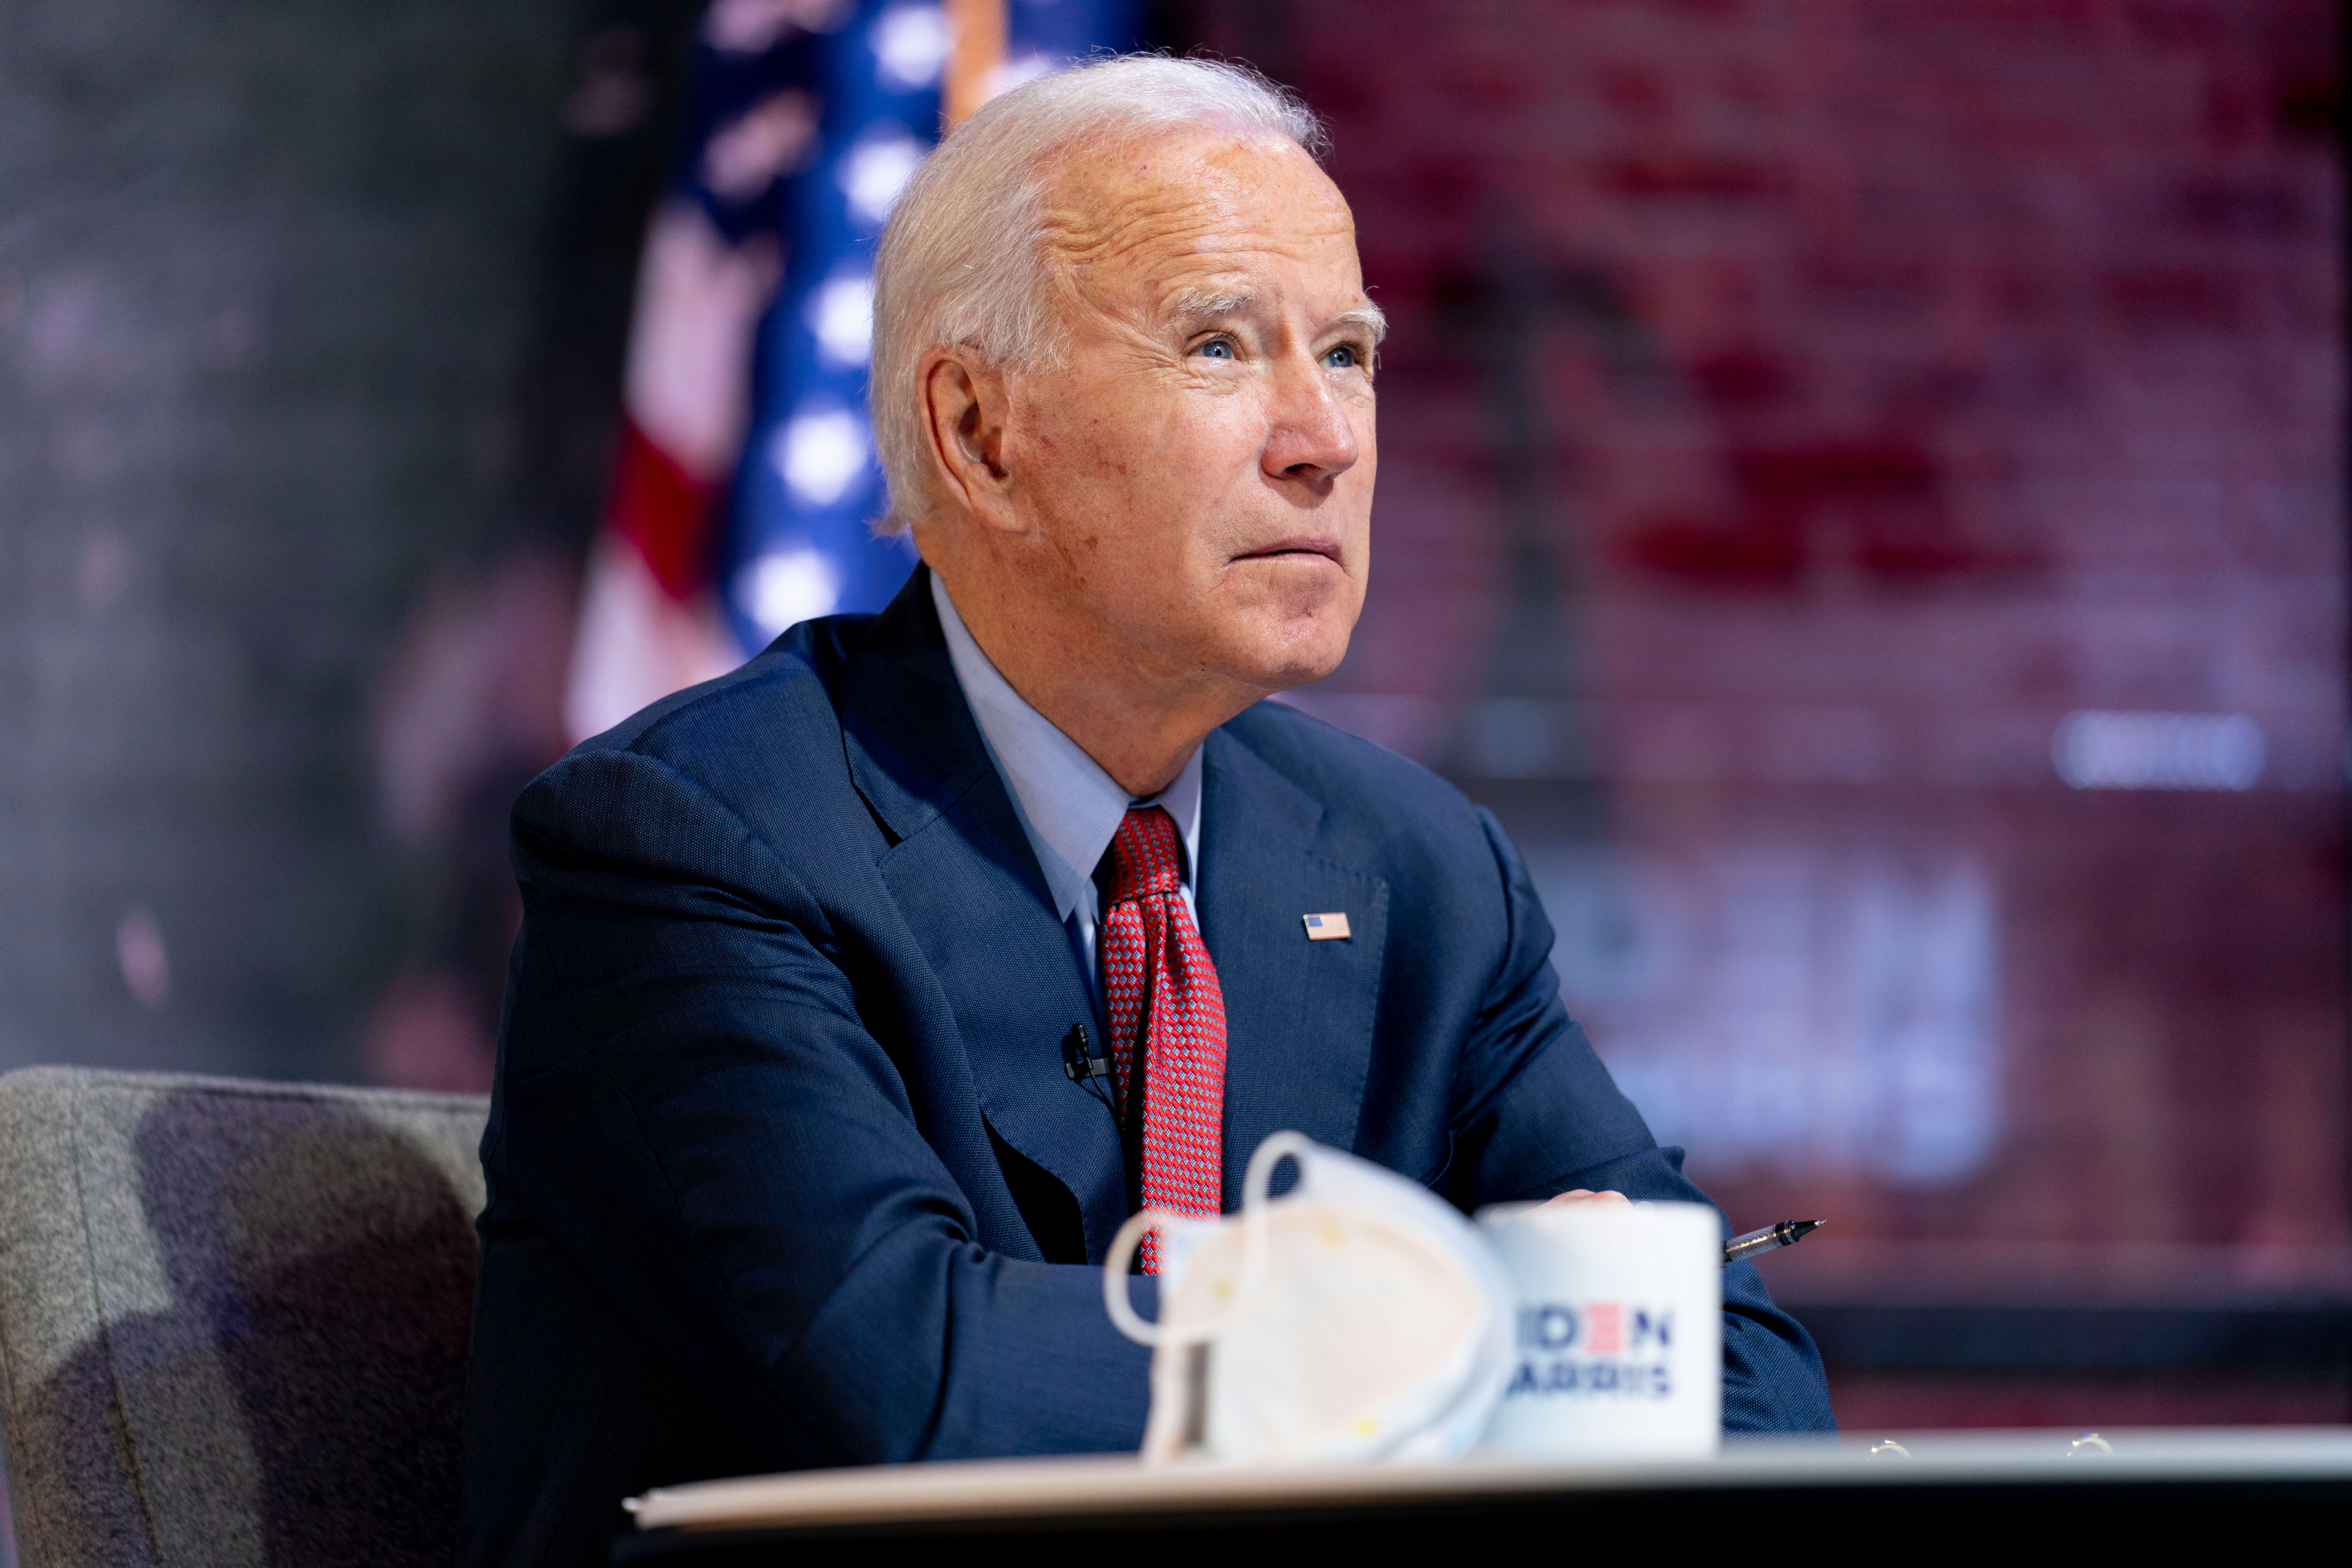 Democratic presidential nominee Joe Biden attends a virtual public health briefing in Wilmington, Delaware, on October 28.